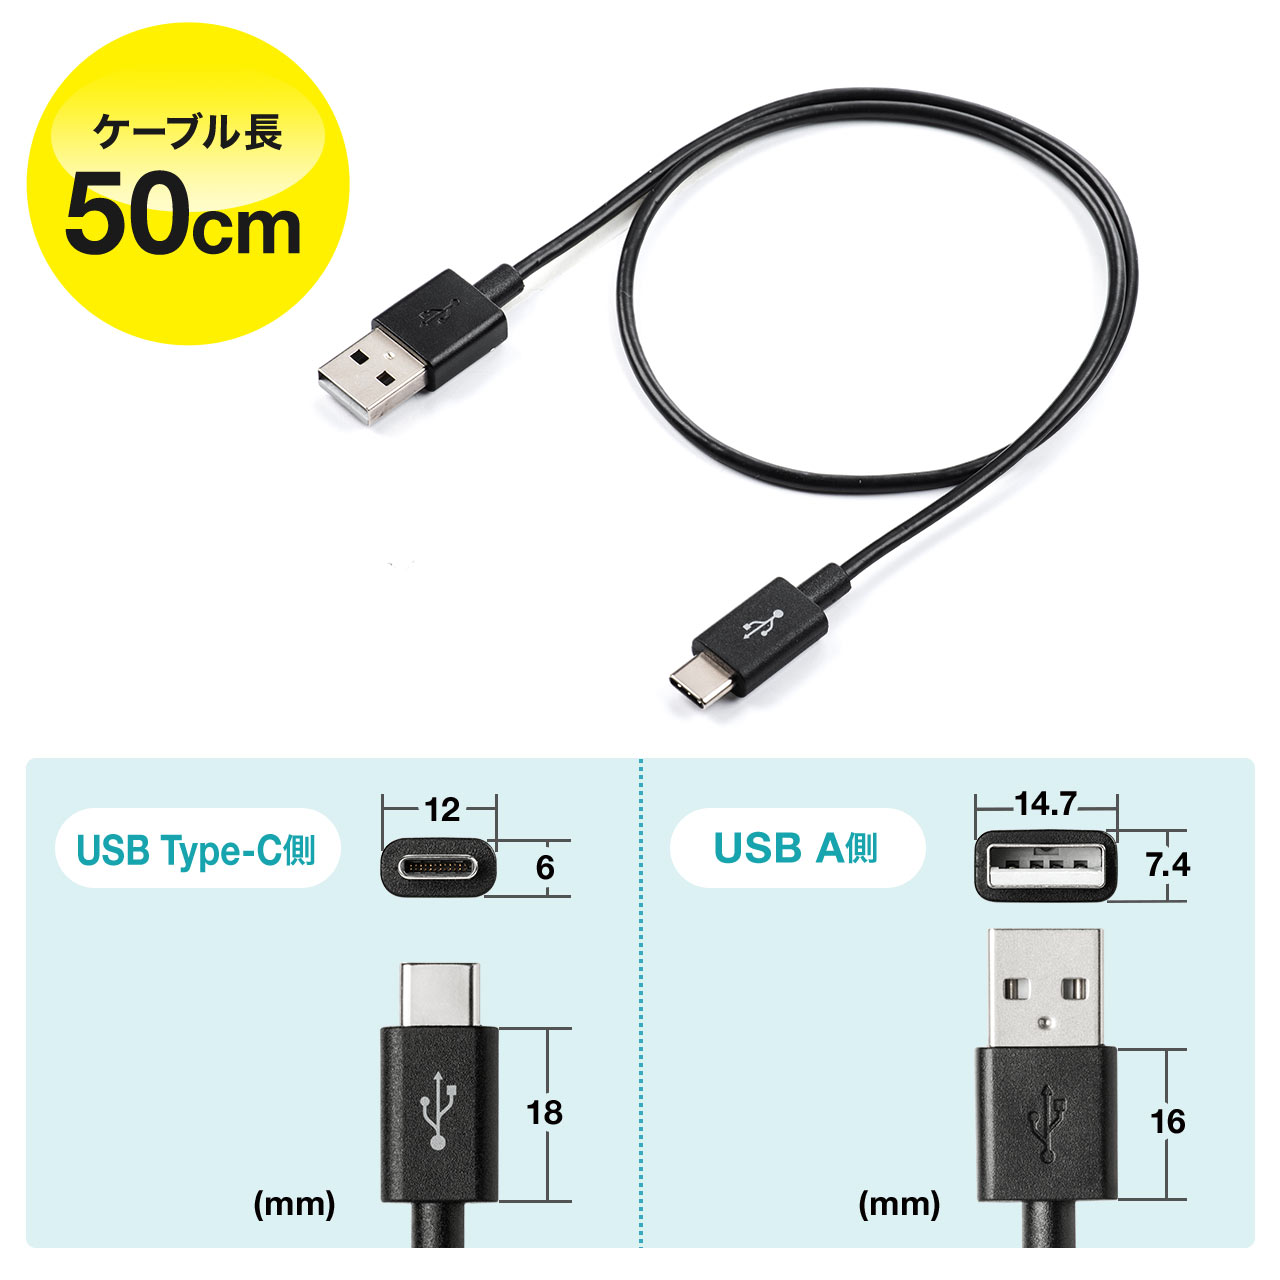 USB Type-CP[u 0.5m USB2.0 USB A USB Type-CRlN^ ubN 500-USB056-05